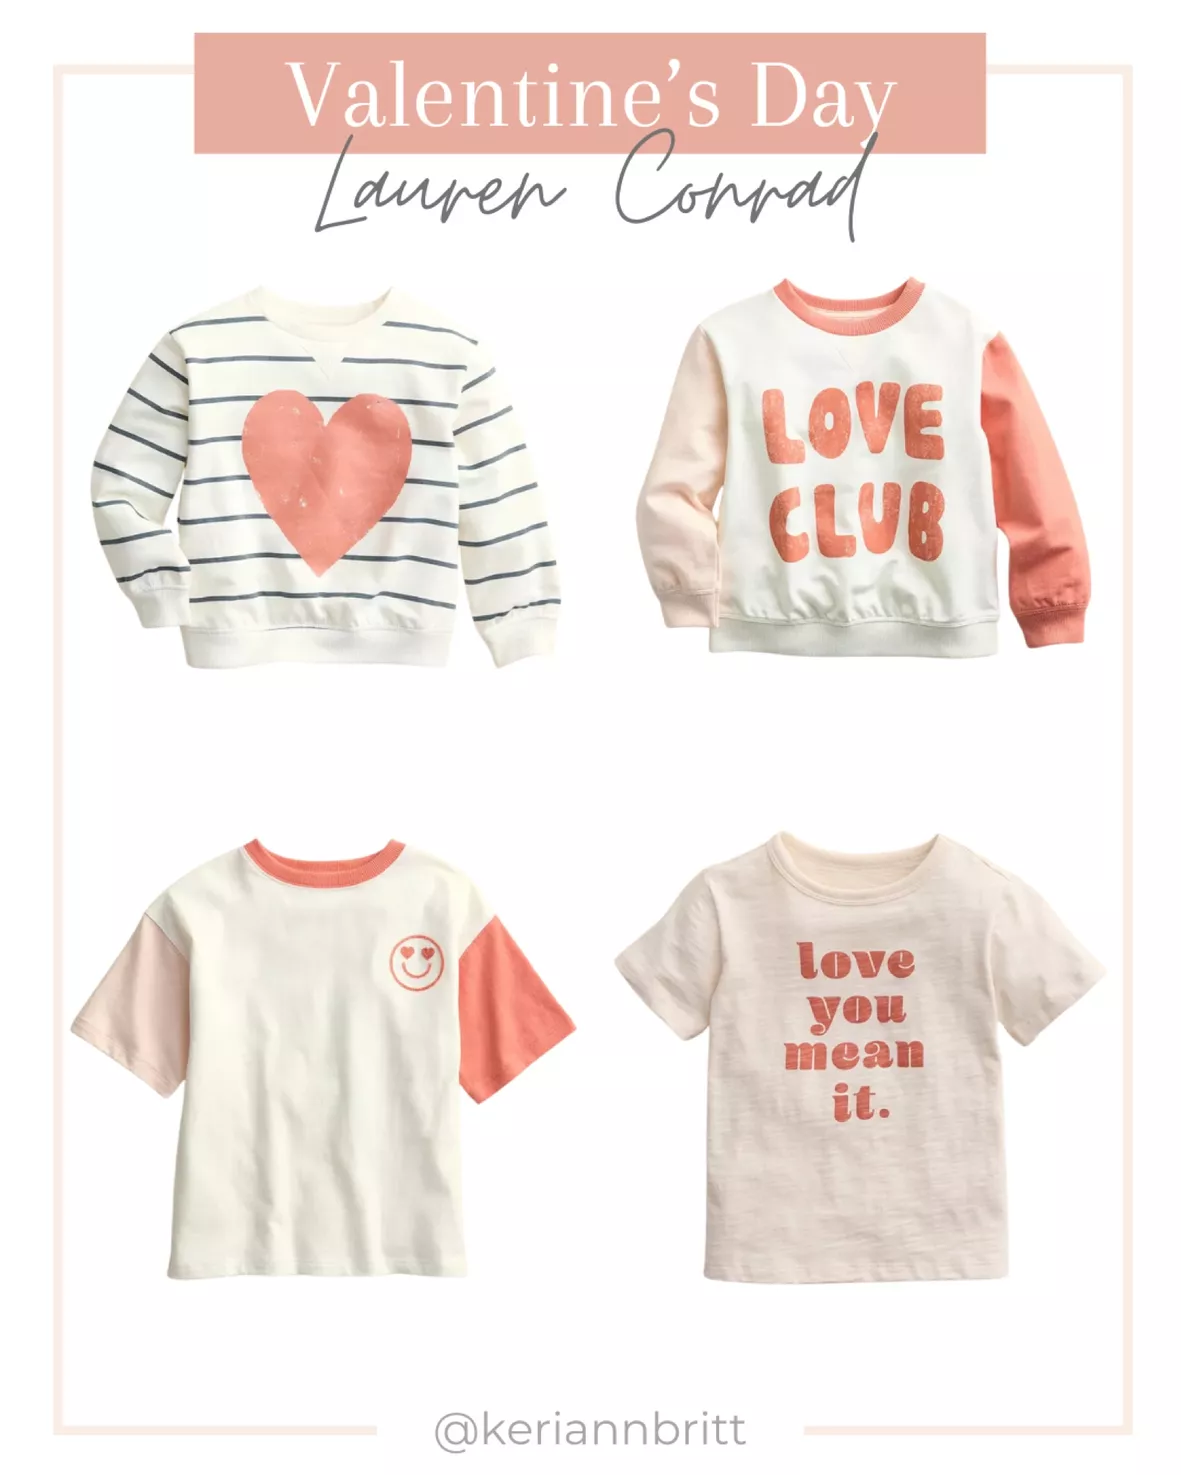 Get Your Hands on Lauren Conrad's Ho! Ho! Ho! Sweater